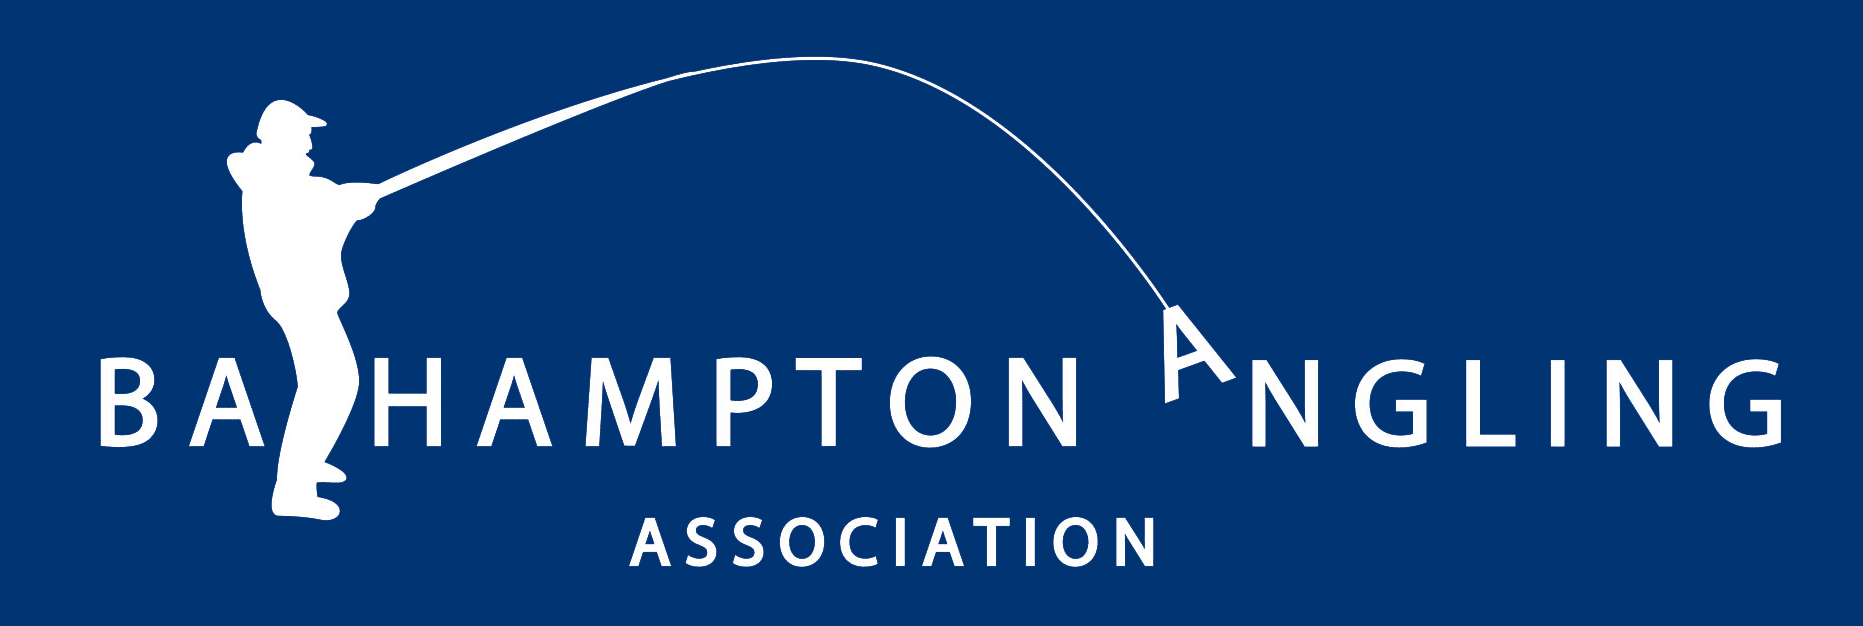 River Avon - Claverton - Bathampton Angling Association